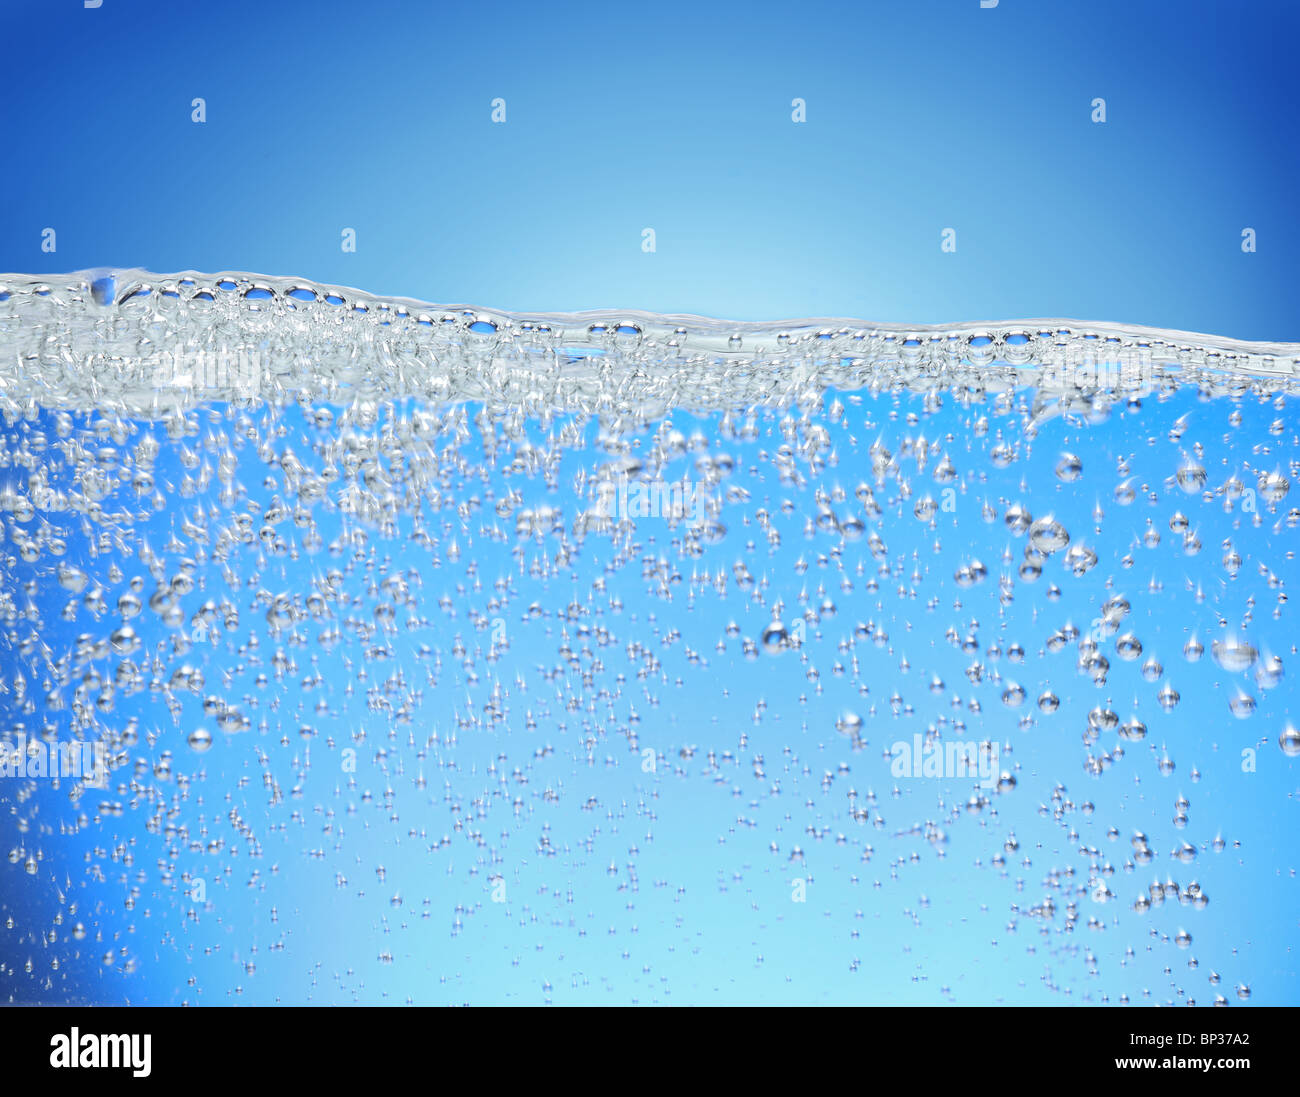 Las burbujas de aire se elevan desde la superficie del agua. Foto de stock